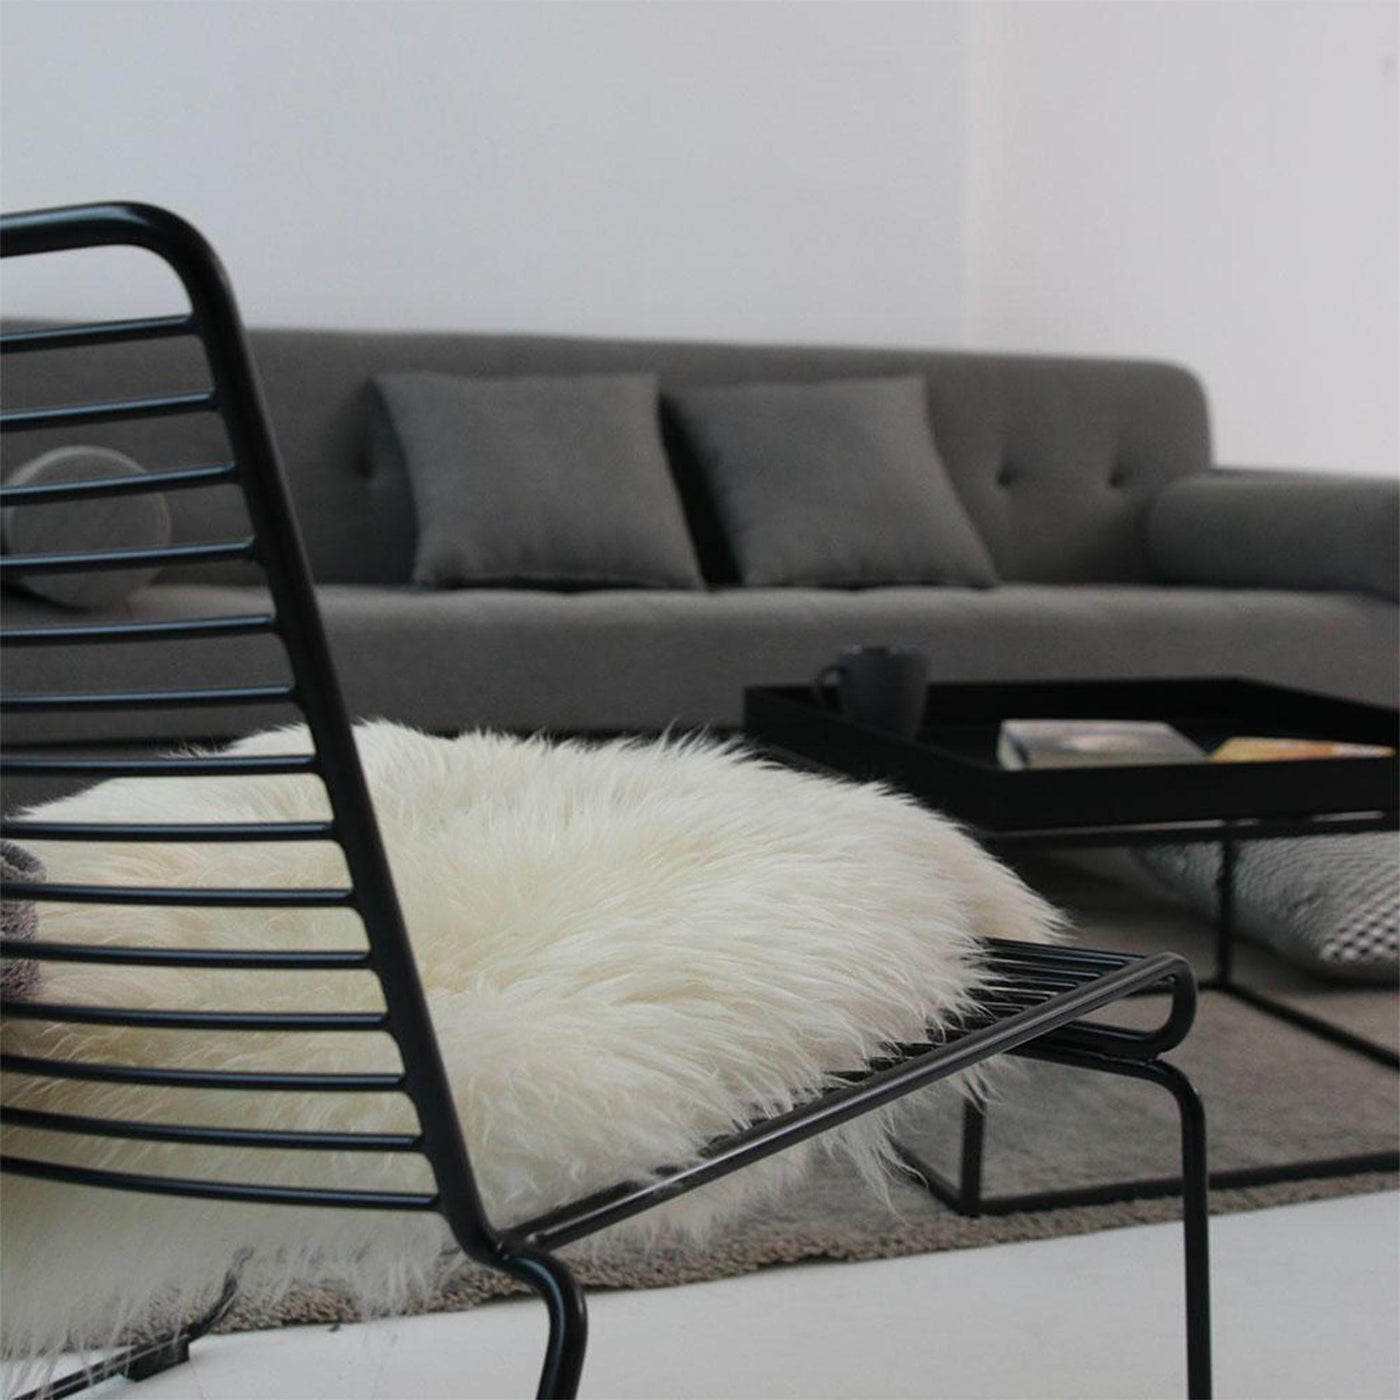 Détendez-vous avec style grâce à la chaise lounge HEE au design accueillant et à la praticité d'empilage, offrant un confort optimal et une gestion d'espace intelligente.